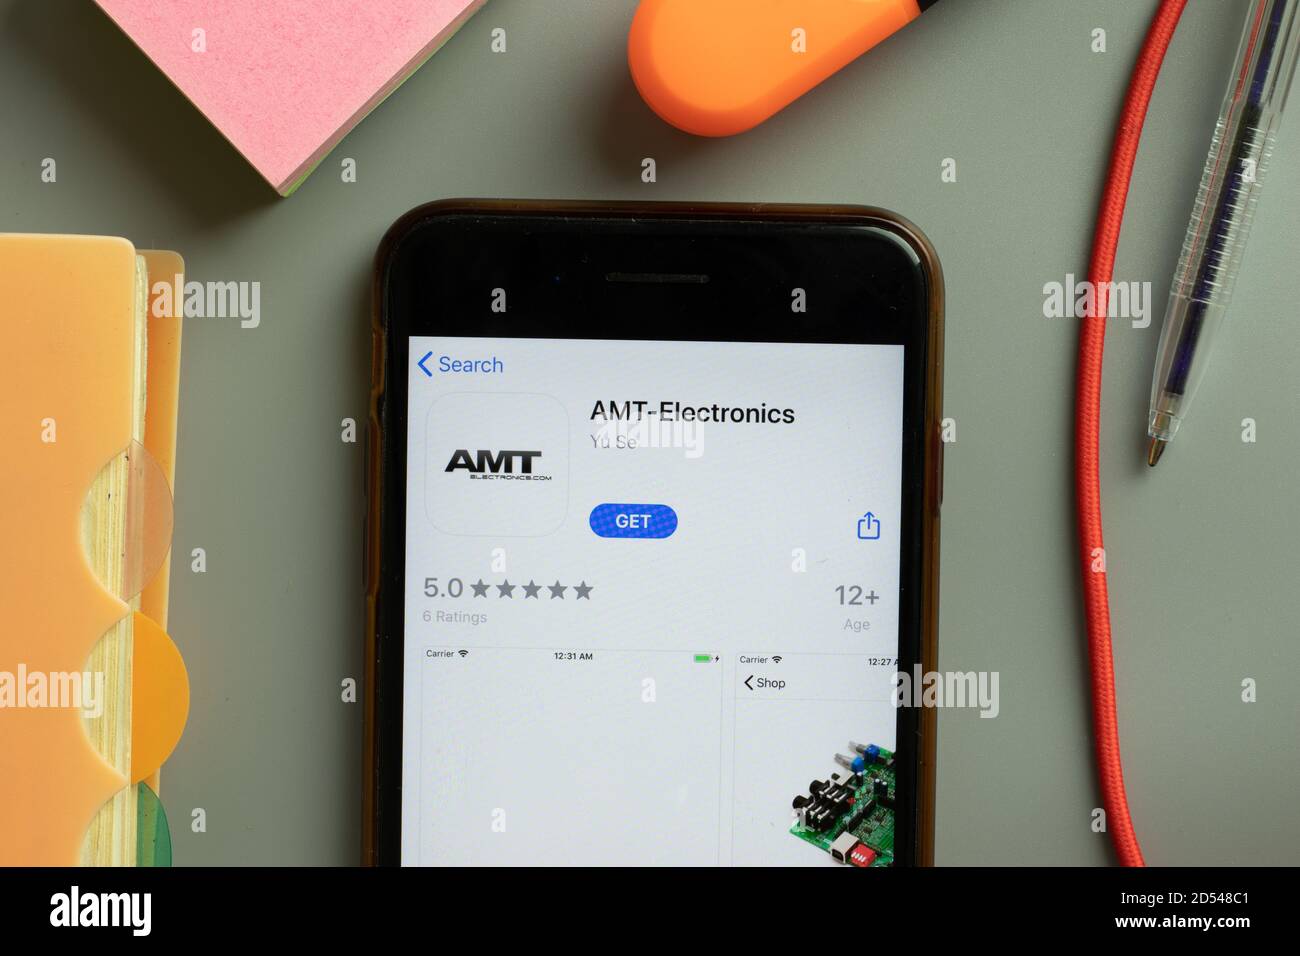 New York, États-Unis - 29 septembre 2020 : logo de l'application mobile AMT Electronics sur l'écran du téléphone, illustration éditoriale Banque D'Images